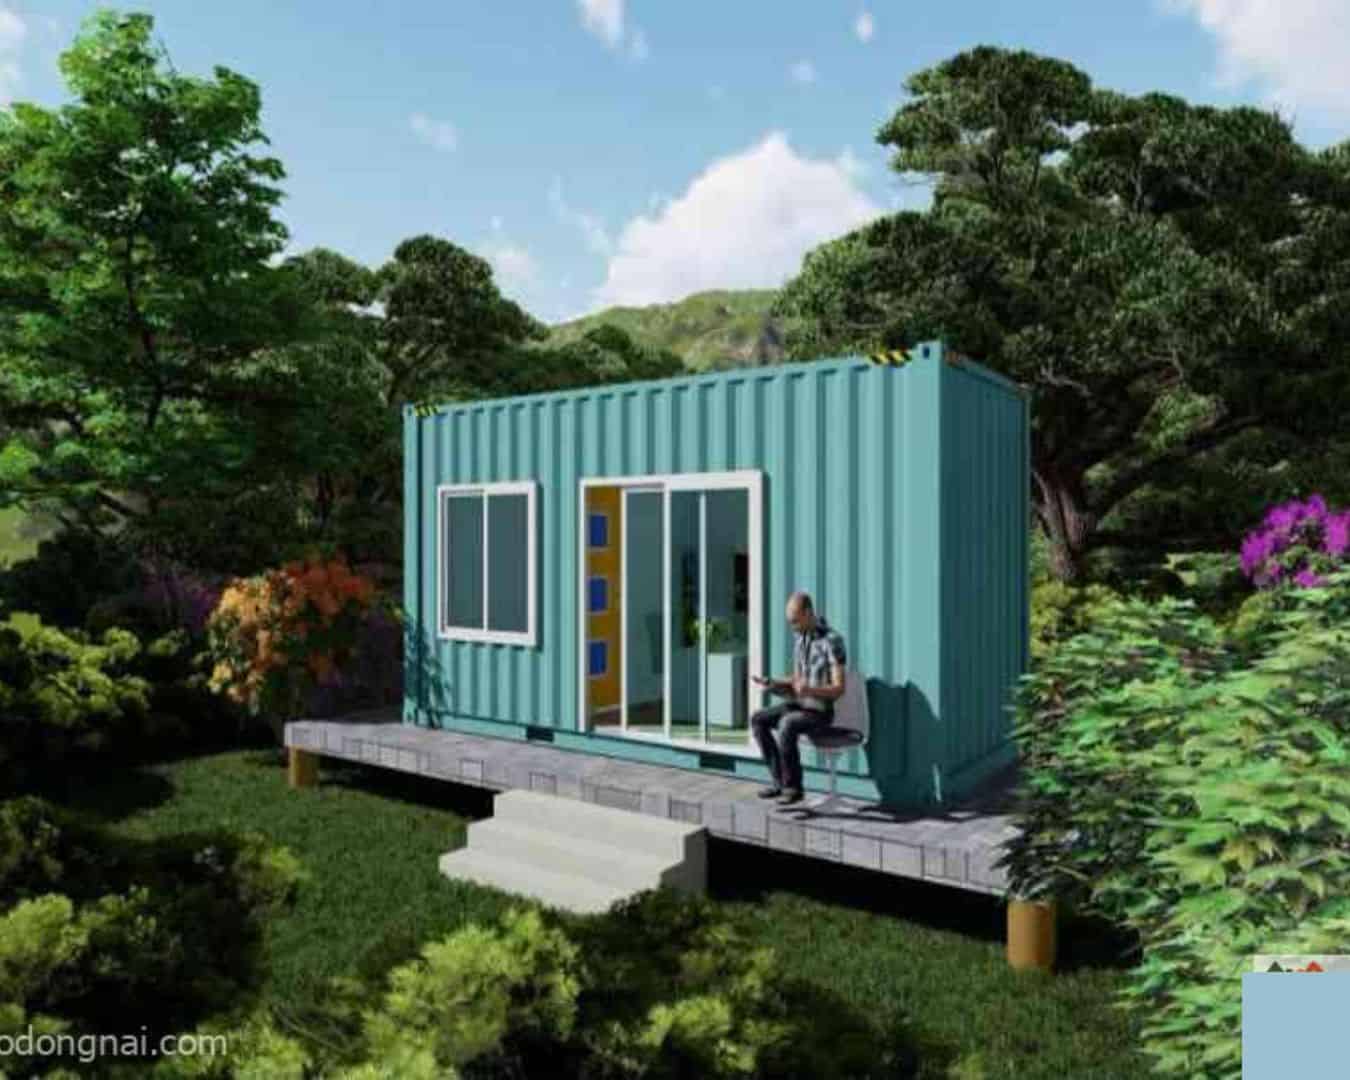 Ngôi nhà làm từ container chính là không gian lí tưởng để làm nơi nghỉ dưỡng